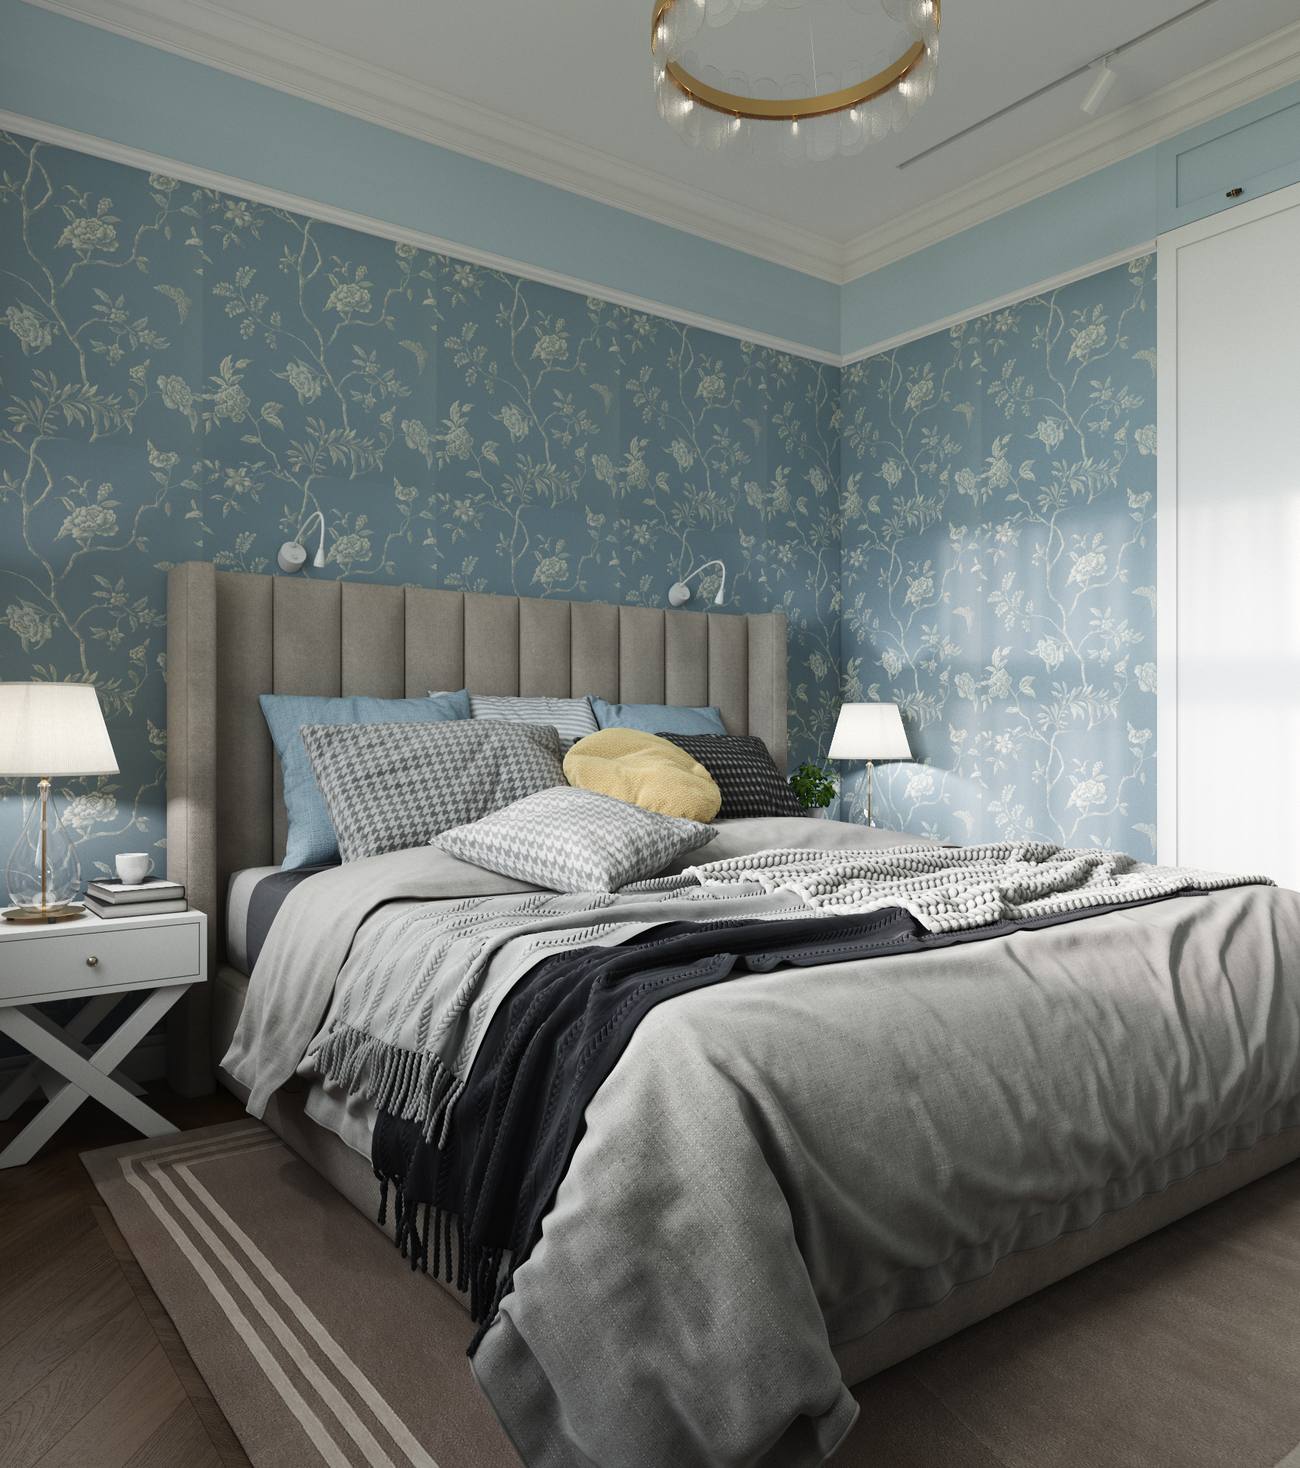 Phòng ngủ riêng biệt của hai vợ chồng vẫn tiếp tục lựa chọn gam màu xanh lam và xám chủ đạo. Tuy nhiên, thay vì sơn tường, chủ nhân đã chọn giấy dán tường hoa văn trang nhã để tạo sự khác biệt. 